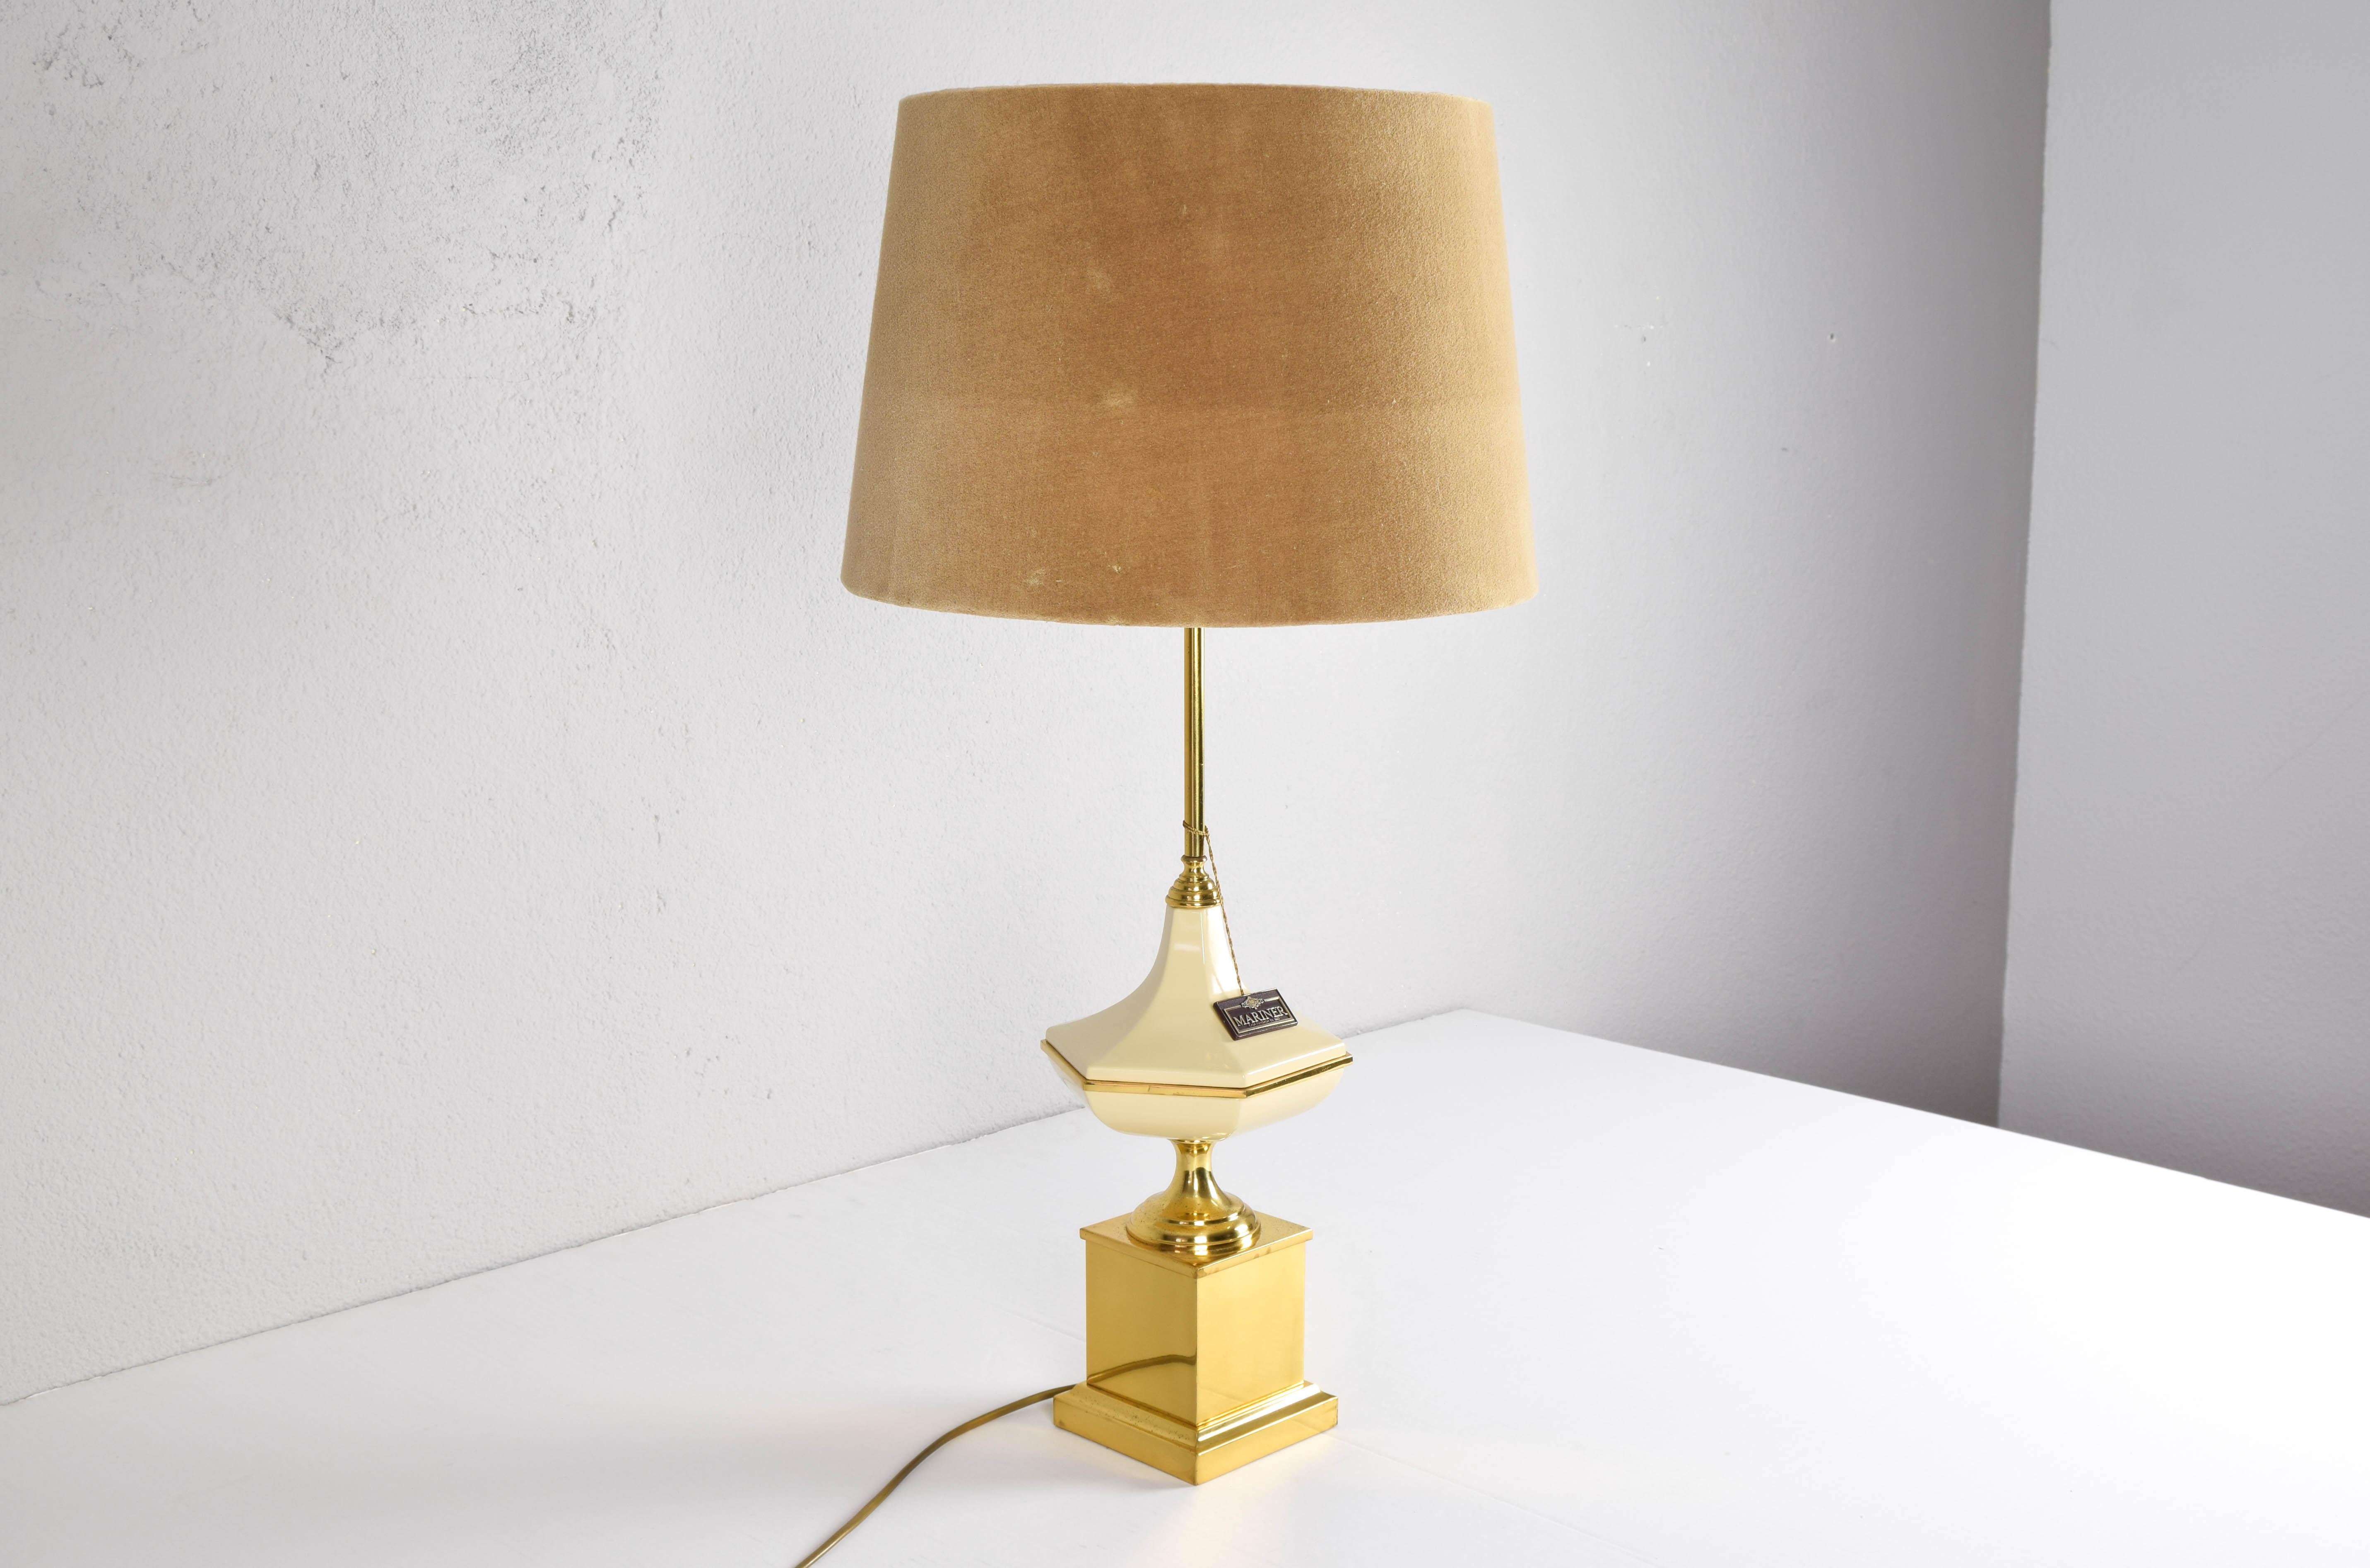 Très élégante et belle lampe de table de la très prestigieuse marque Marin fabriquée en Espagne dans les années 70.
Corps en acier laitonné sur sa base cubique et figure hexagonale laquée ivoire.
Marin est un gage de sophistication et